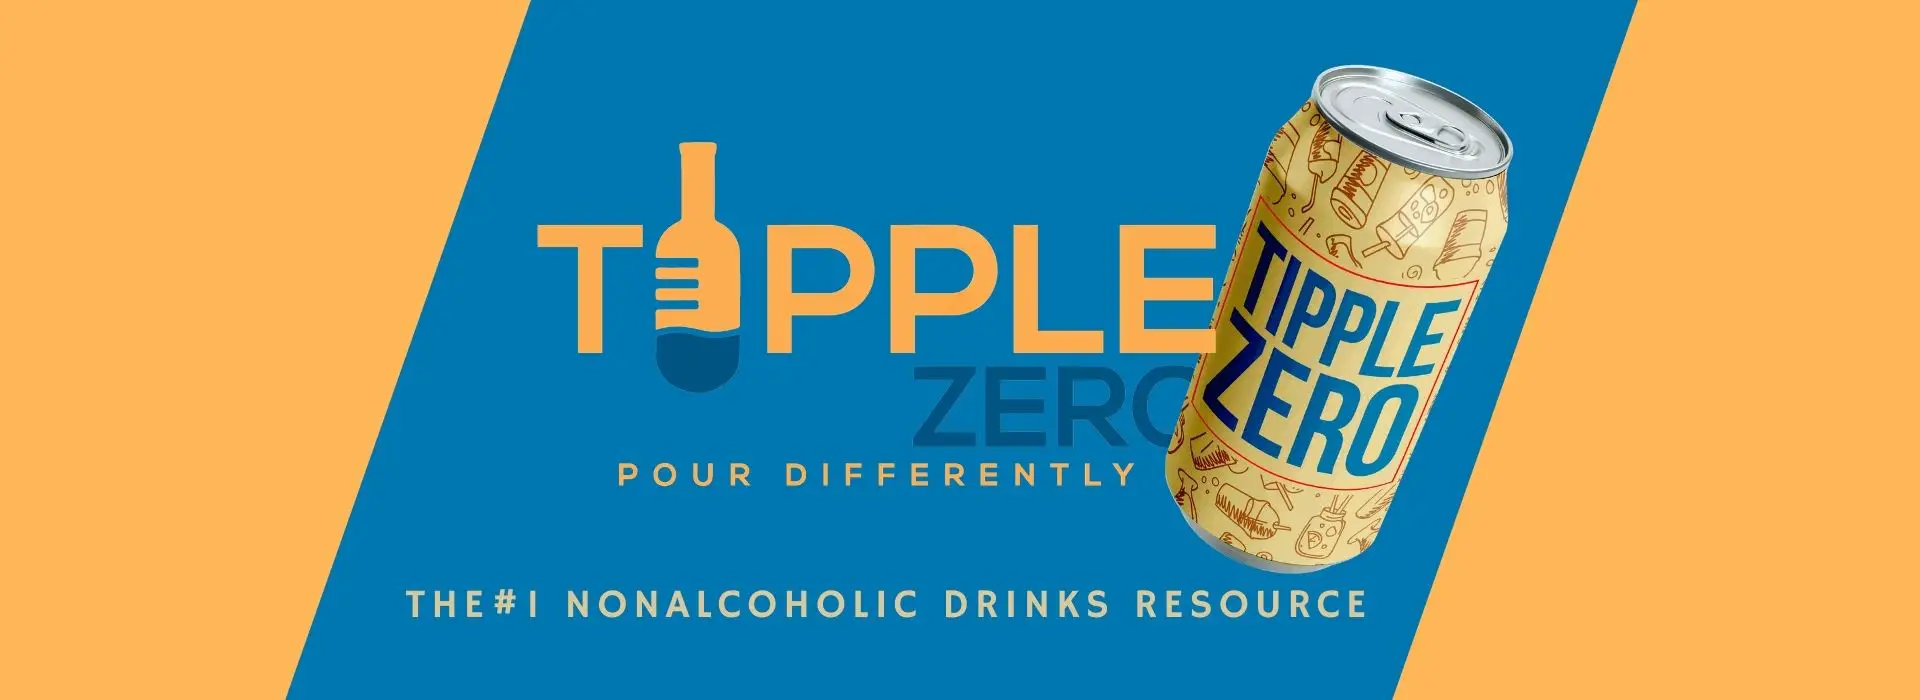 Tipple Zero Zero alcohol Drinks Podcast